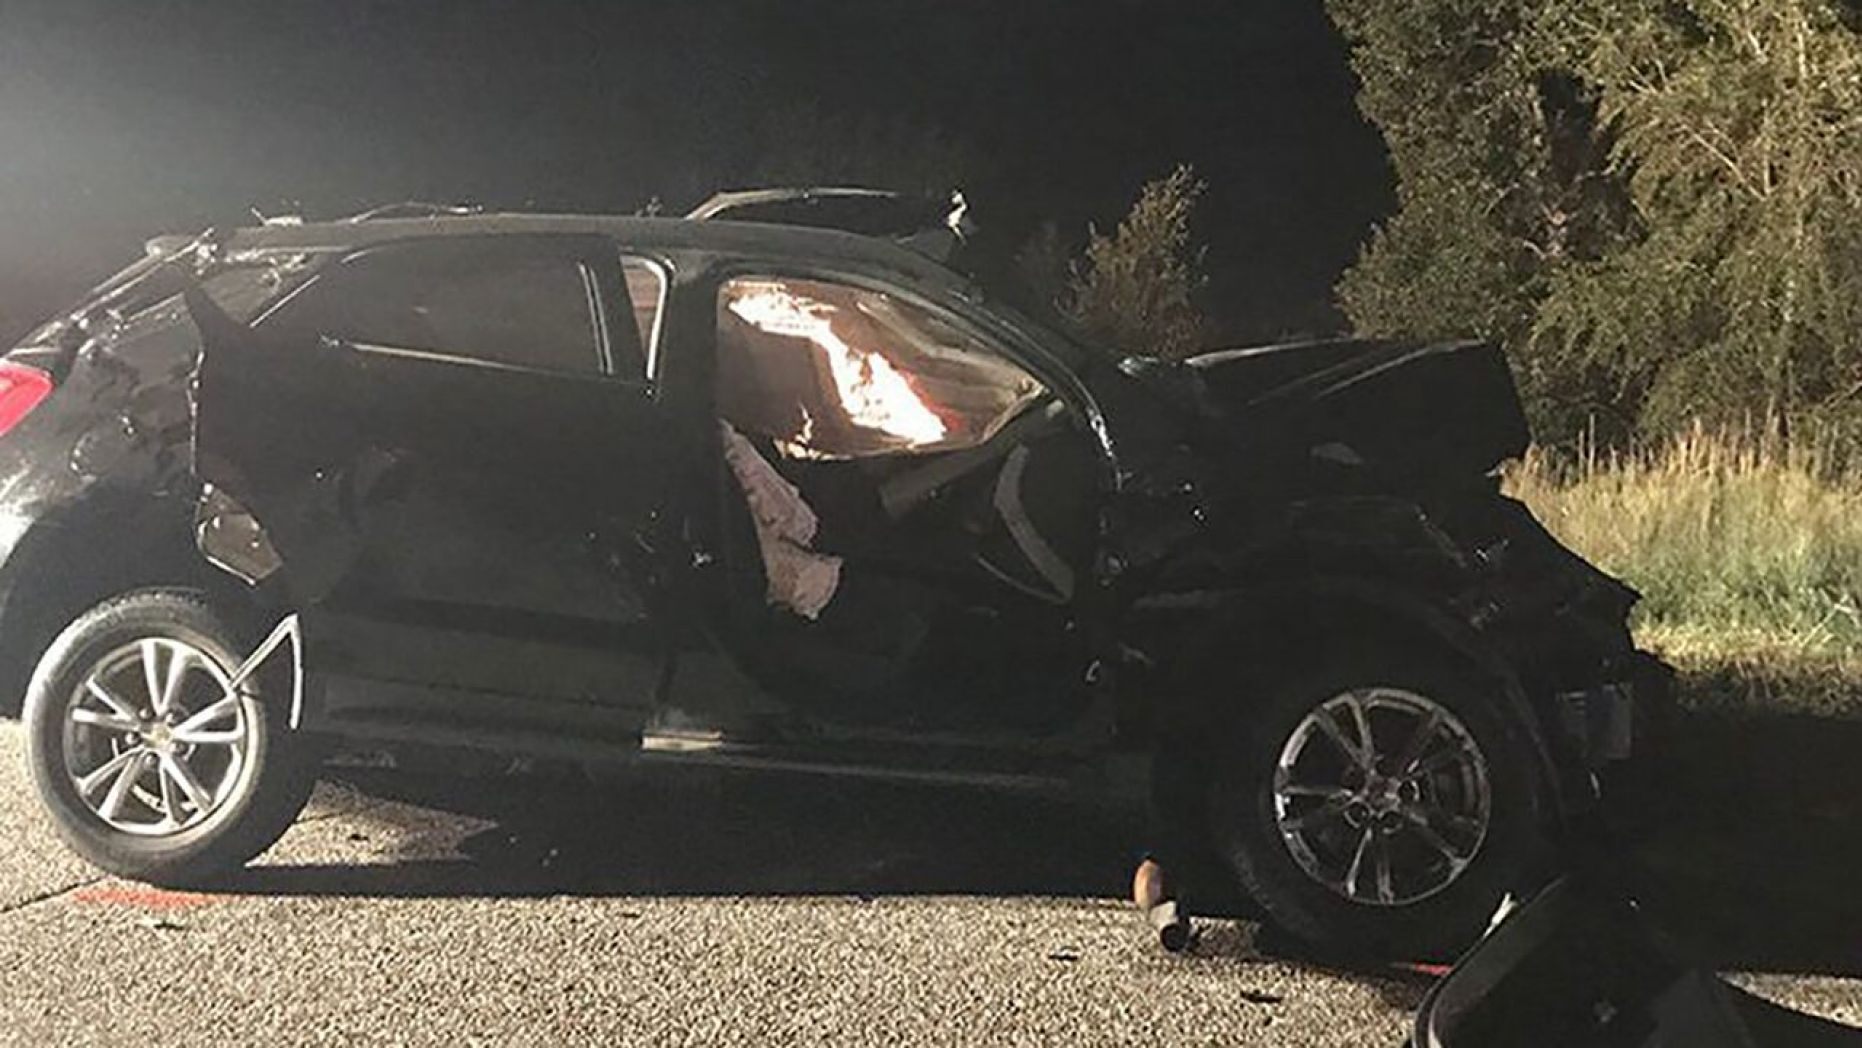 Harris's car accident